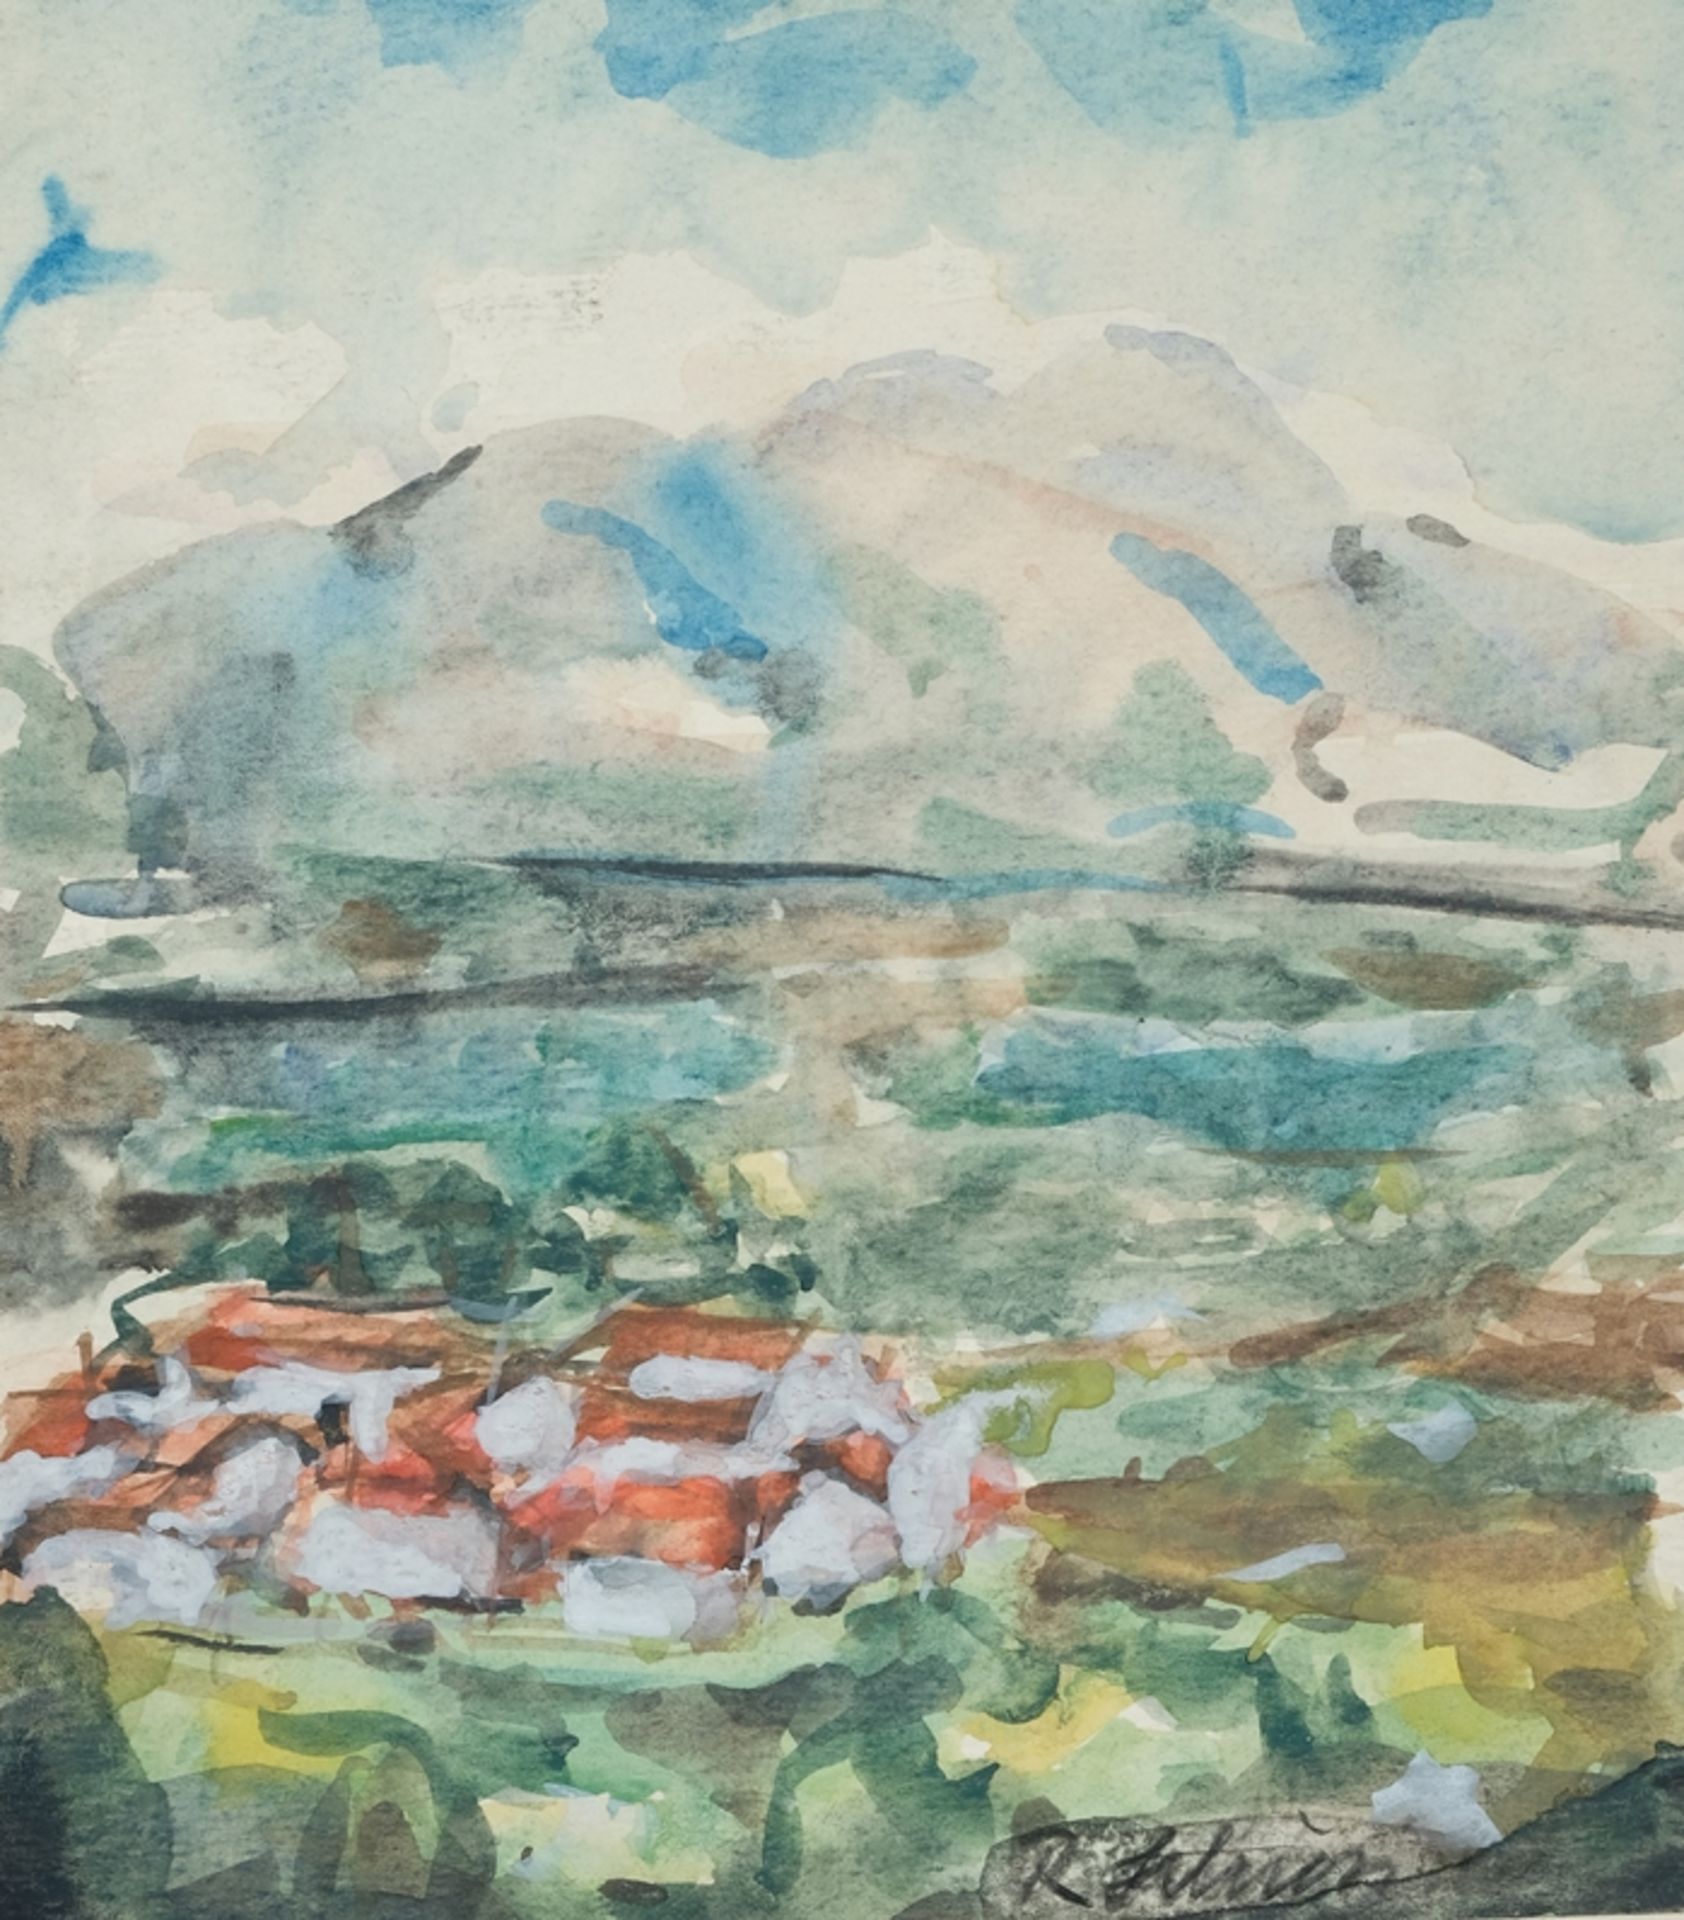 Schiess, Hans Rudolf (1904-1978) Blick auf See und Berge, Aquarell auf Papier. 